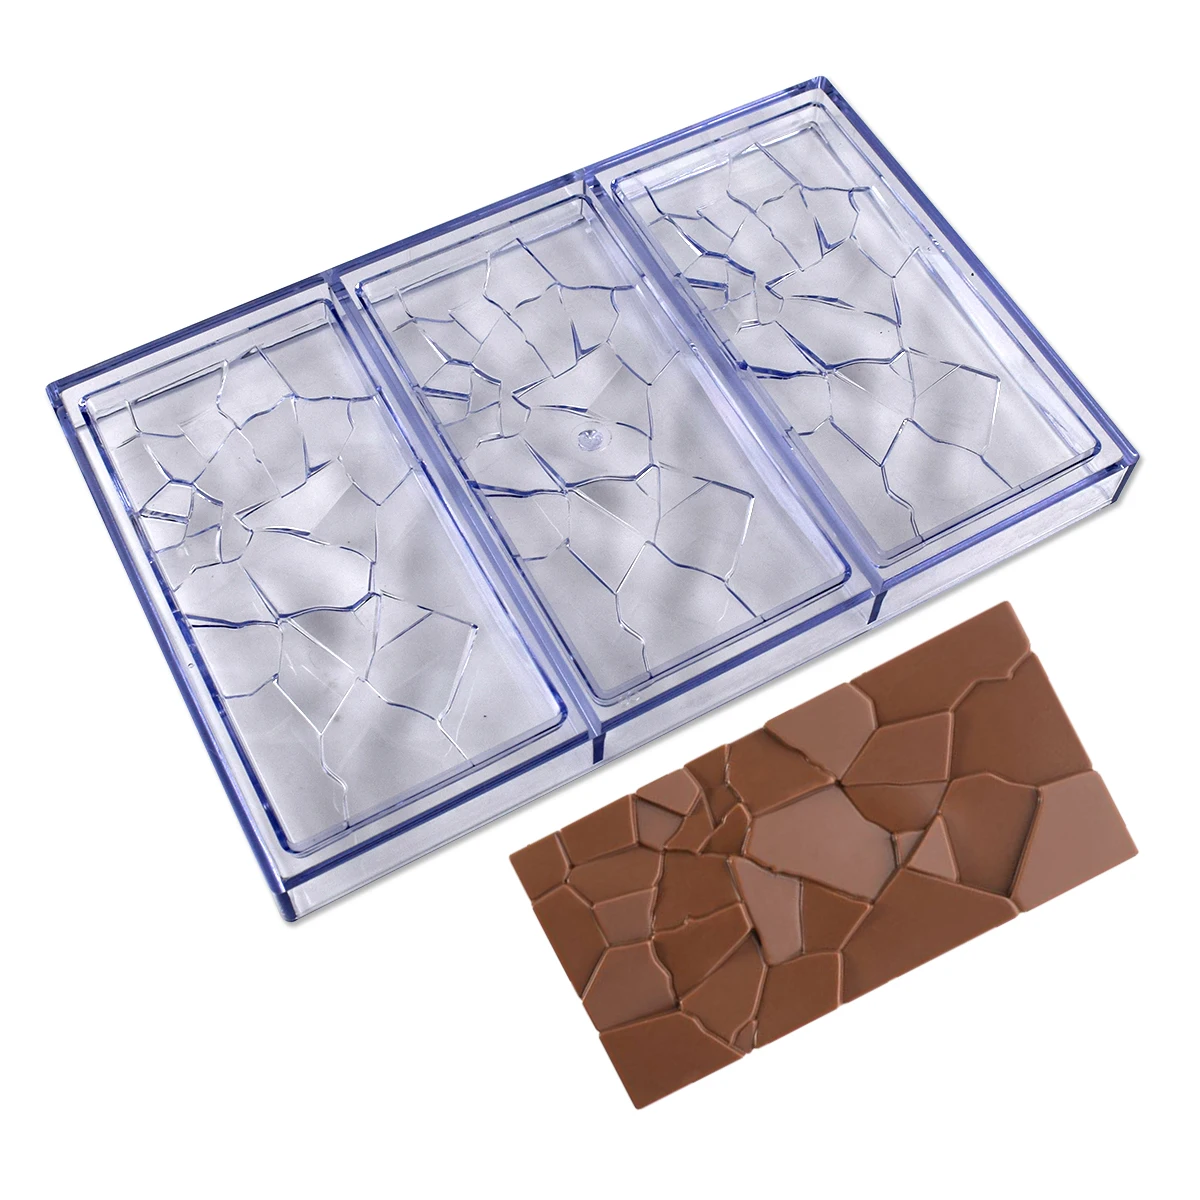 Molde de policarbonato para chocolate, forma oblata profesional para  bombones de caramelo, 24 cavidades, 0.21 oz/piezas, confitería, horneado